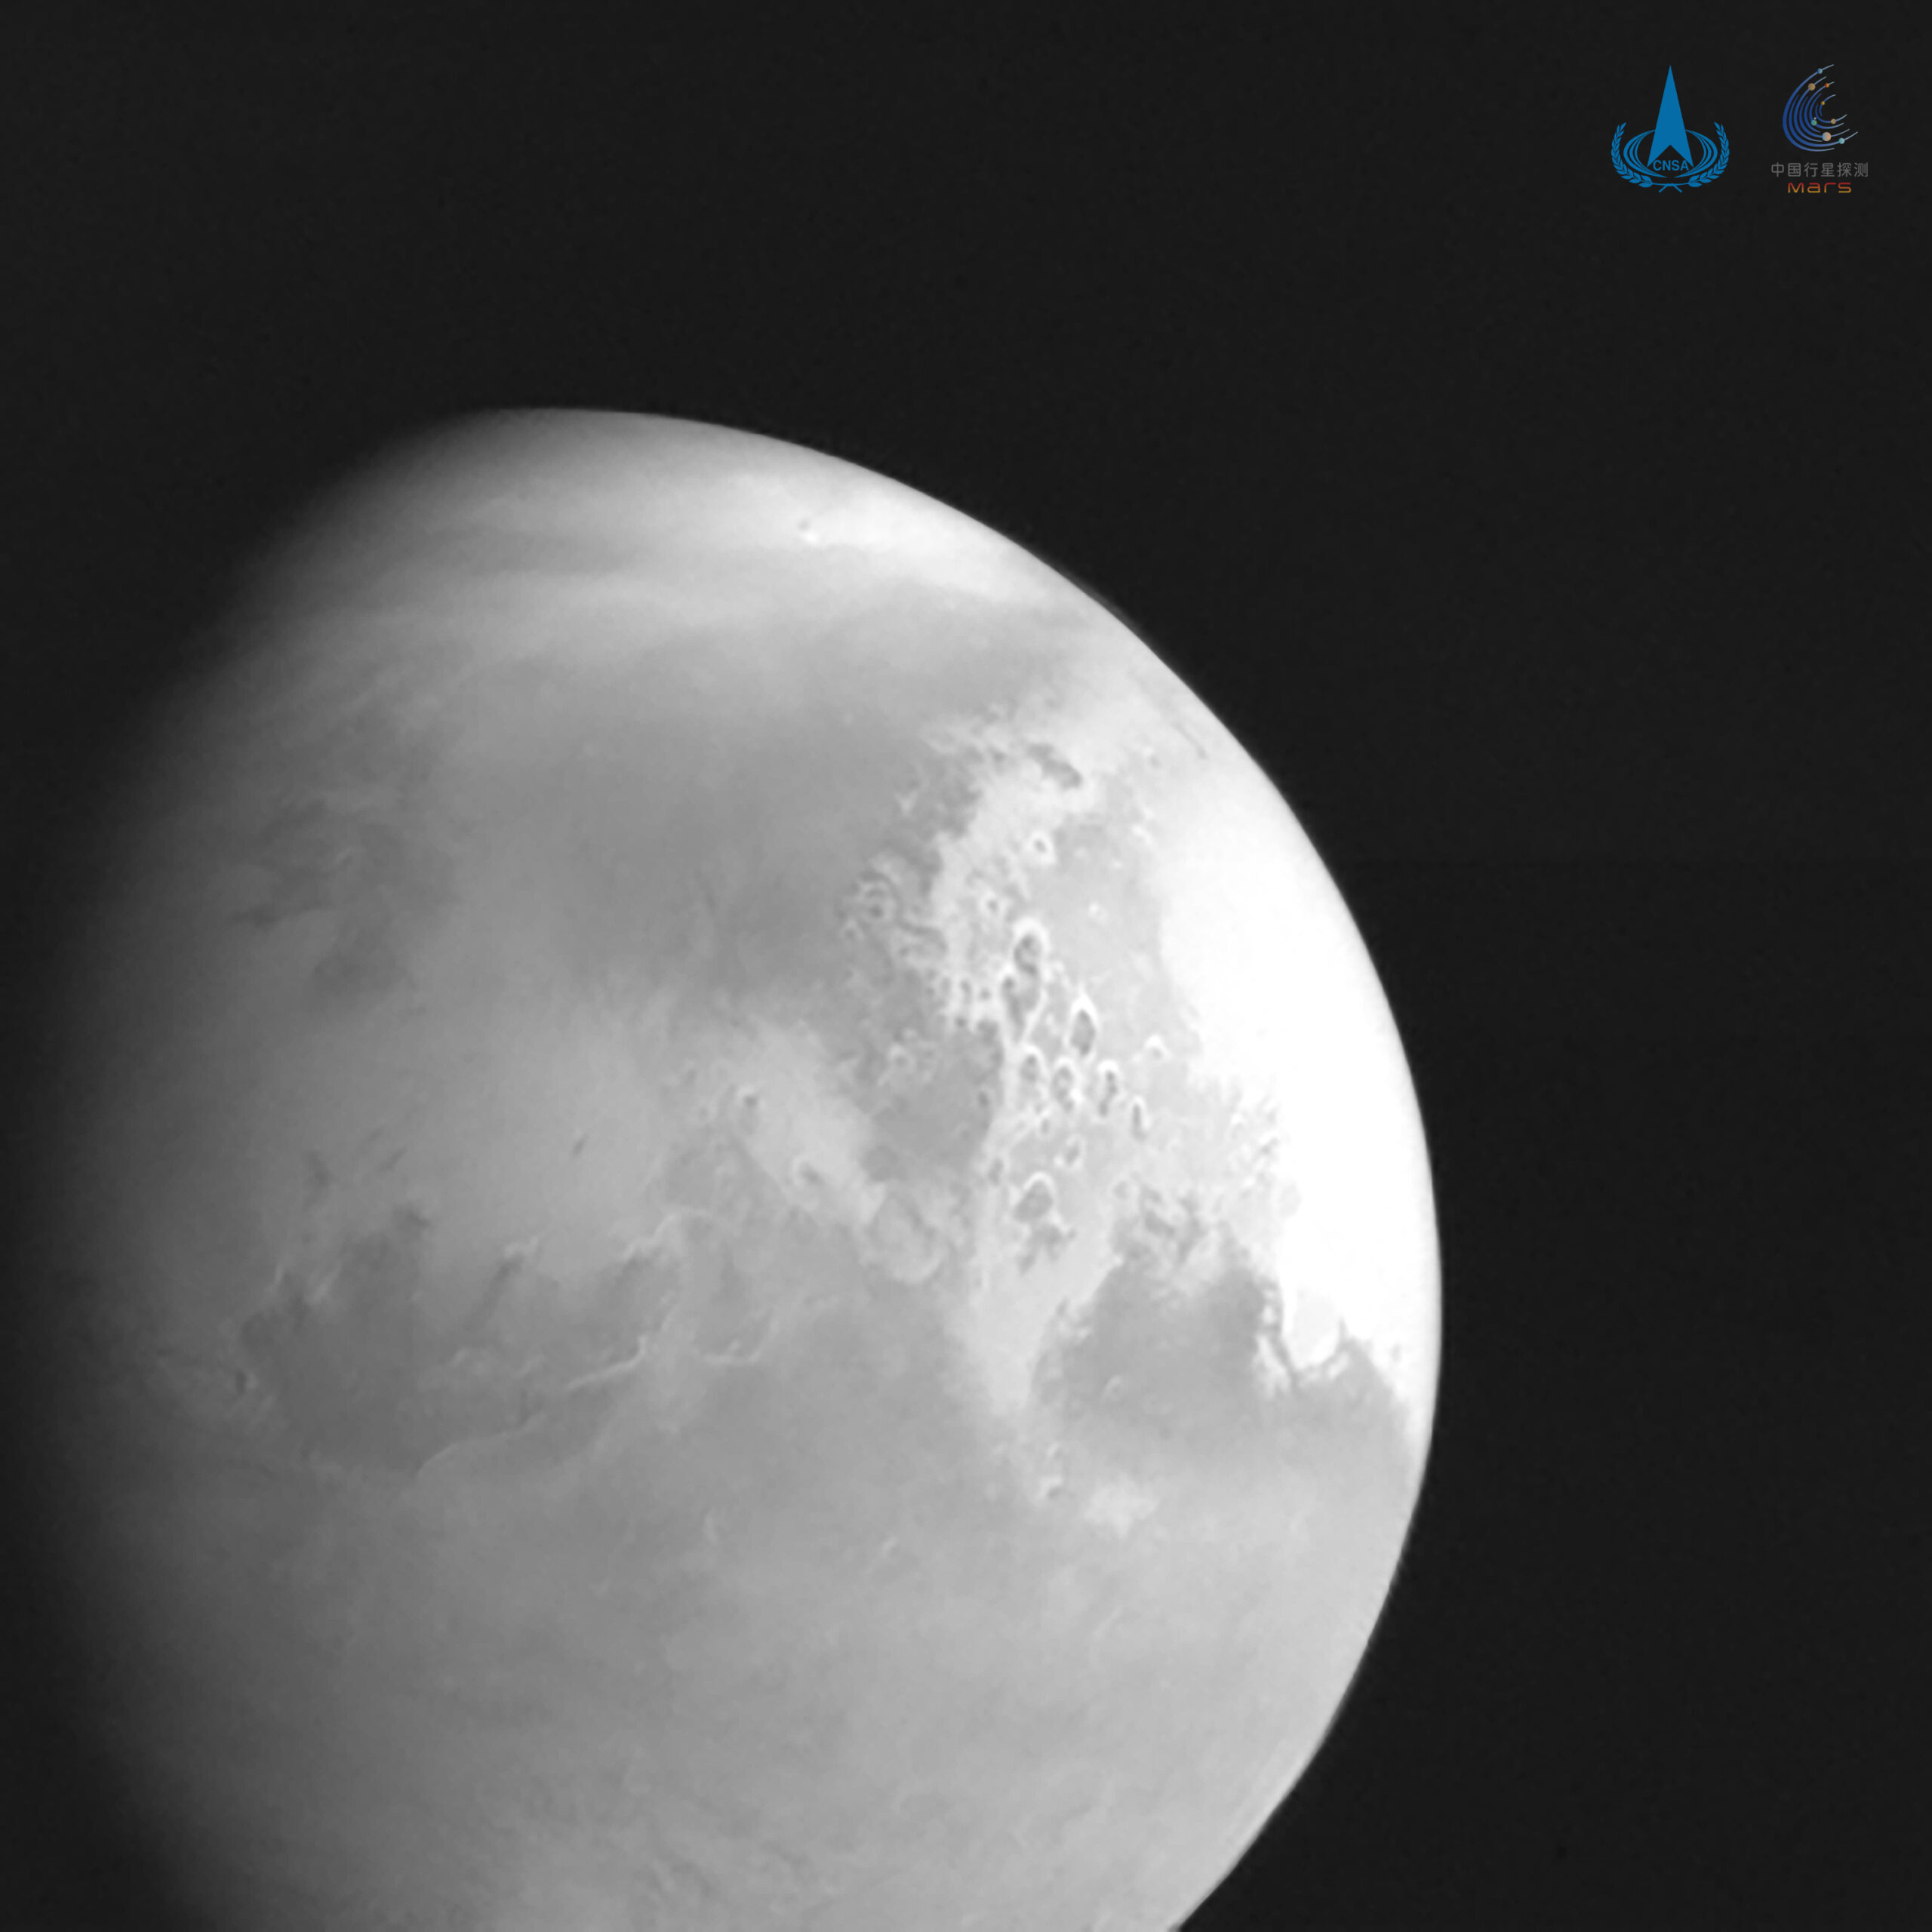 China’s Tianwen-1 bypasses Mars